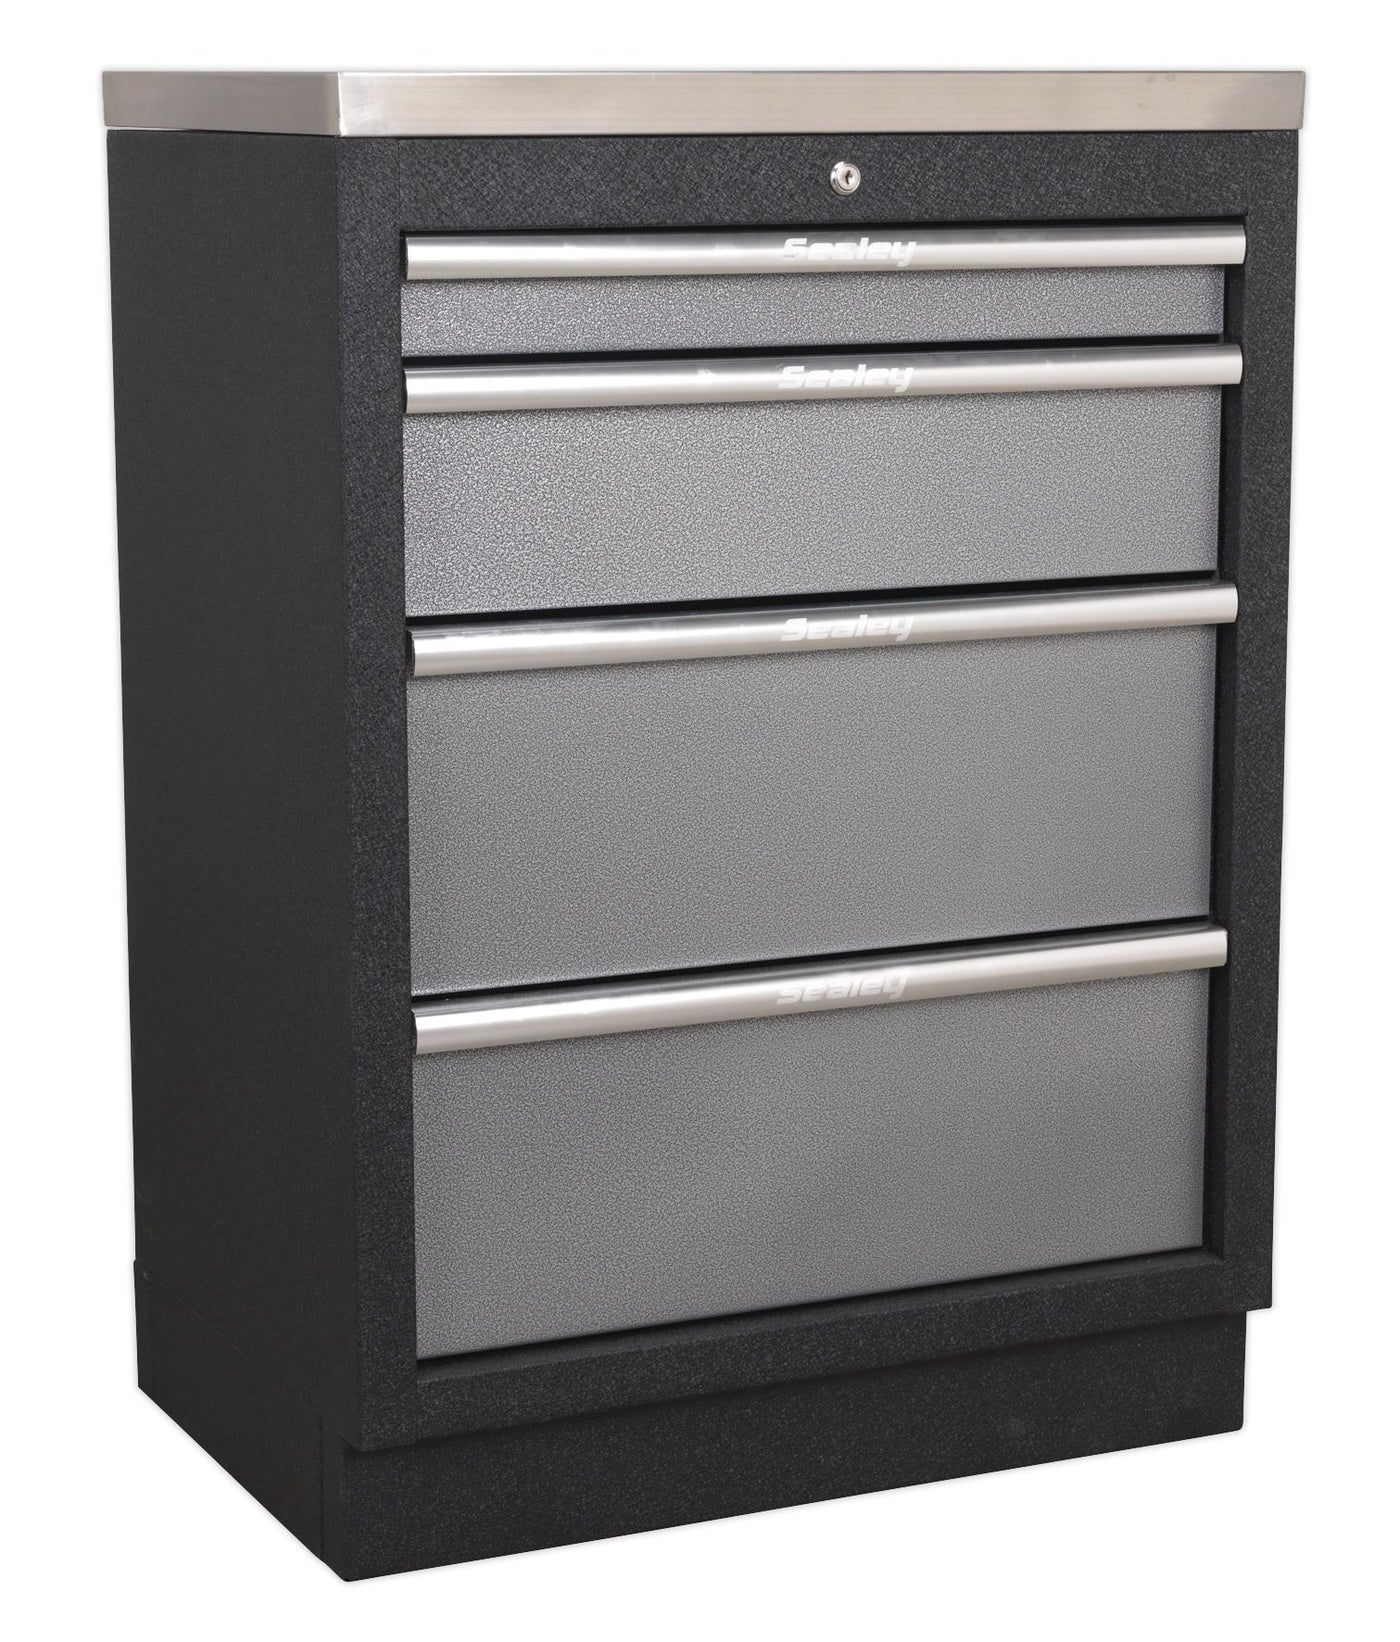 Sealey 4 Drawer Cabinet AMPS51 - Superline Pro Range